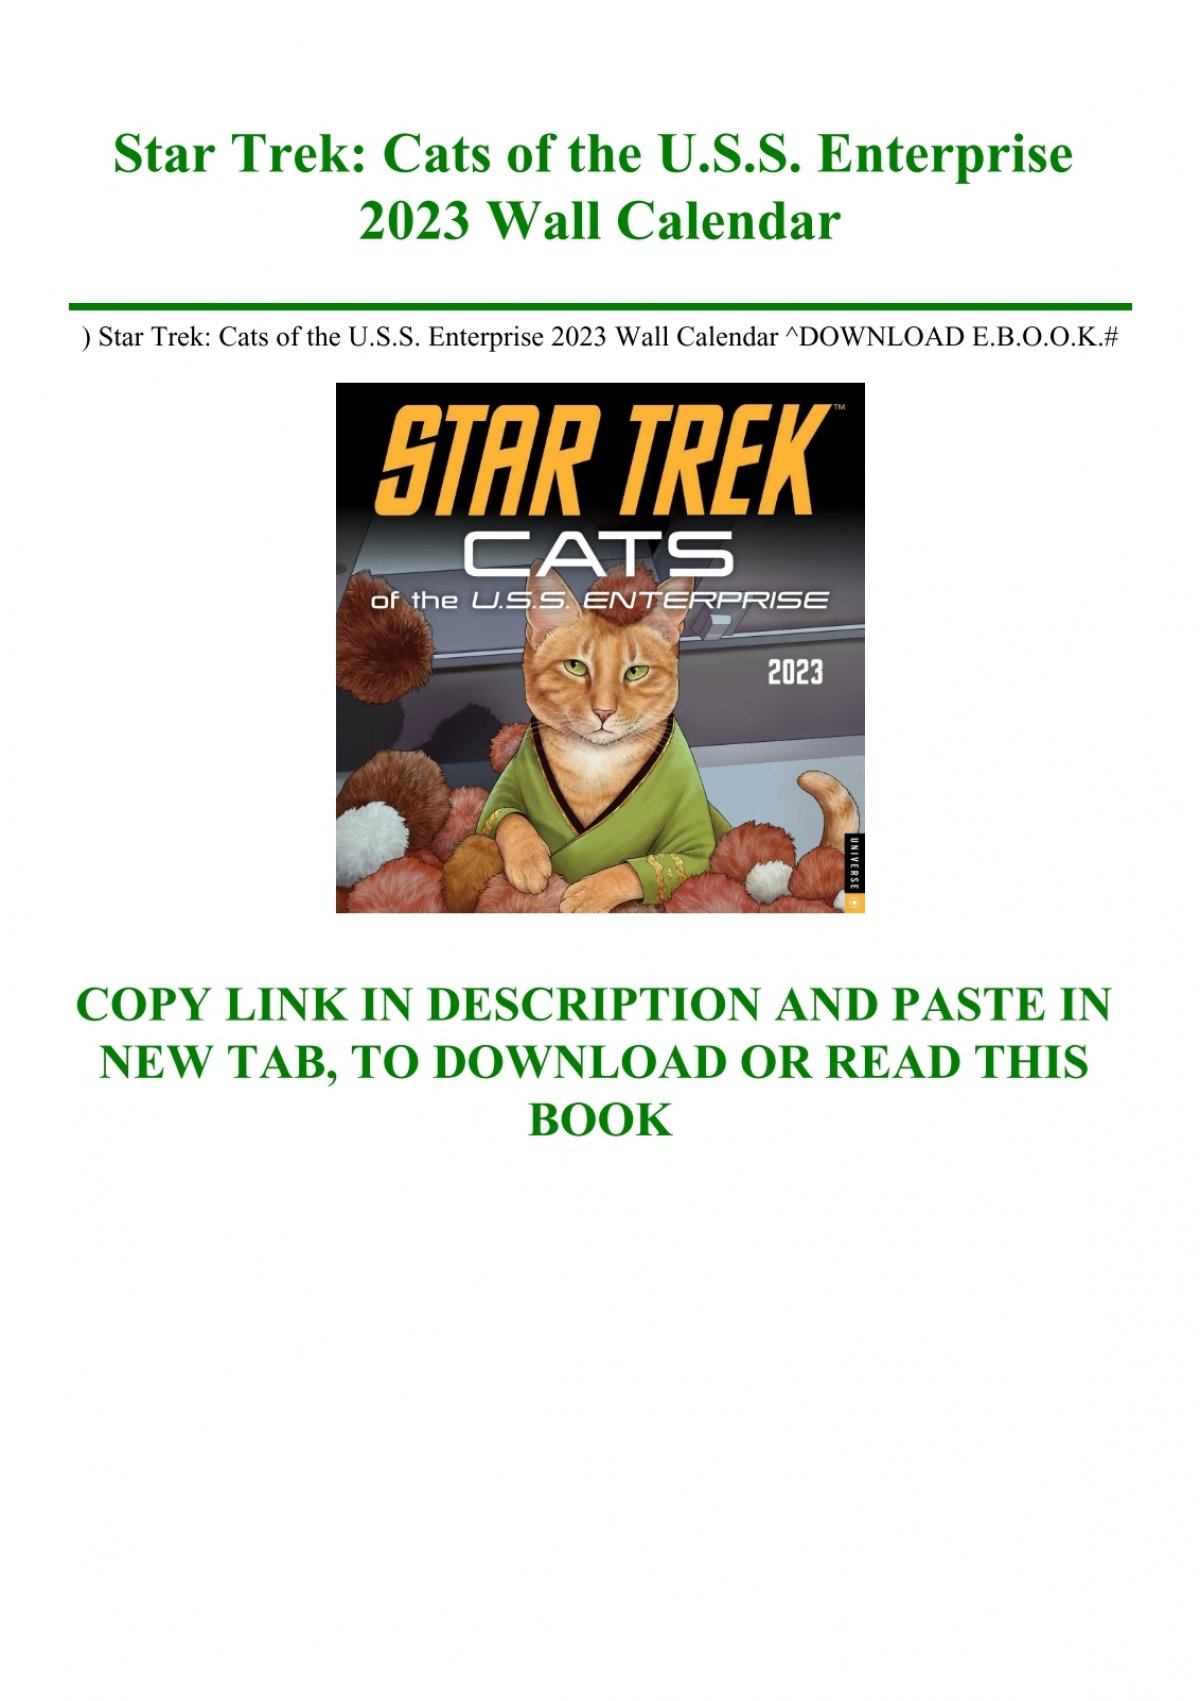 star trek cats of the u.s.s. enterprise 2023 wall calendar